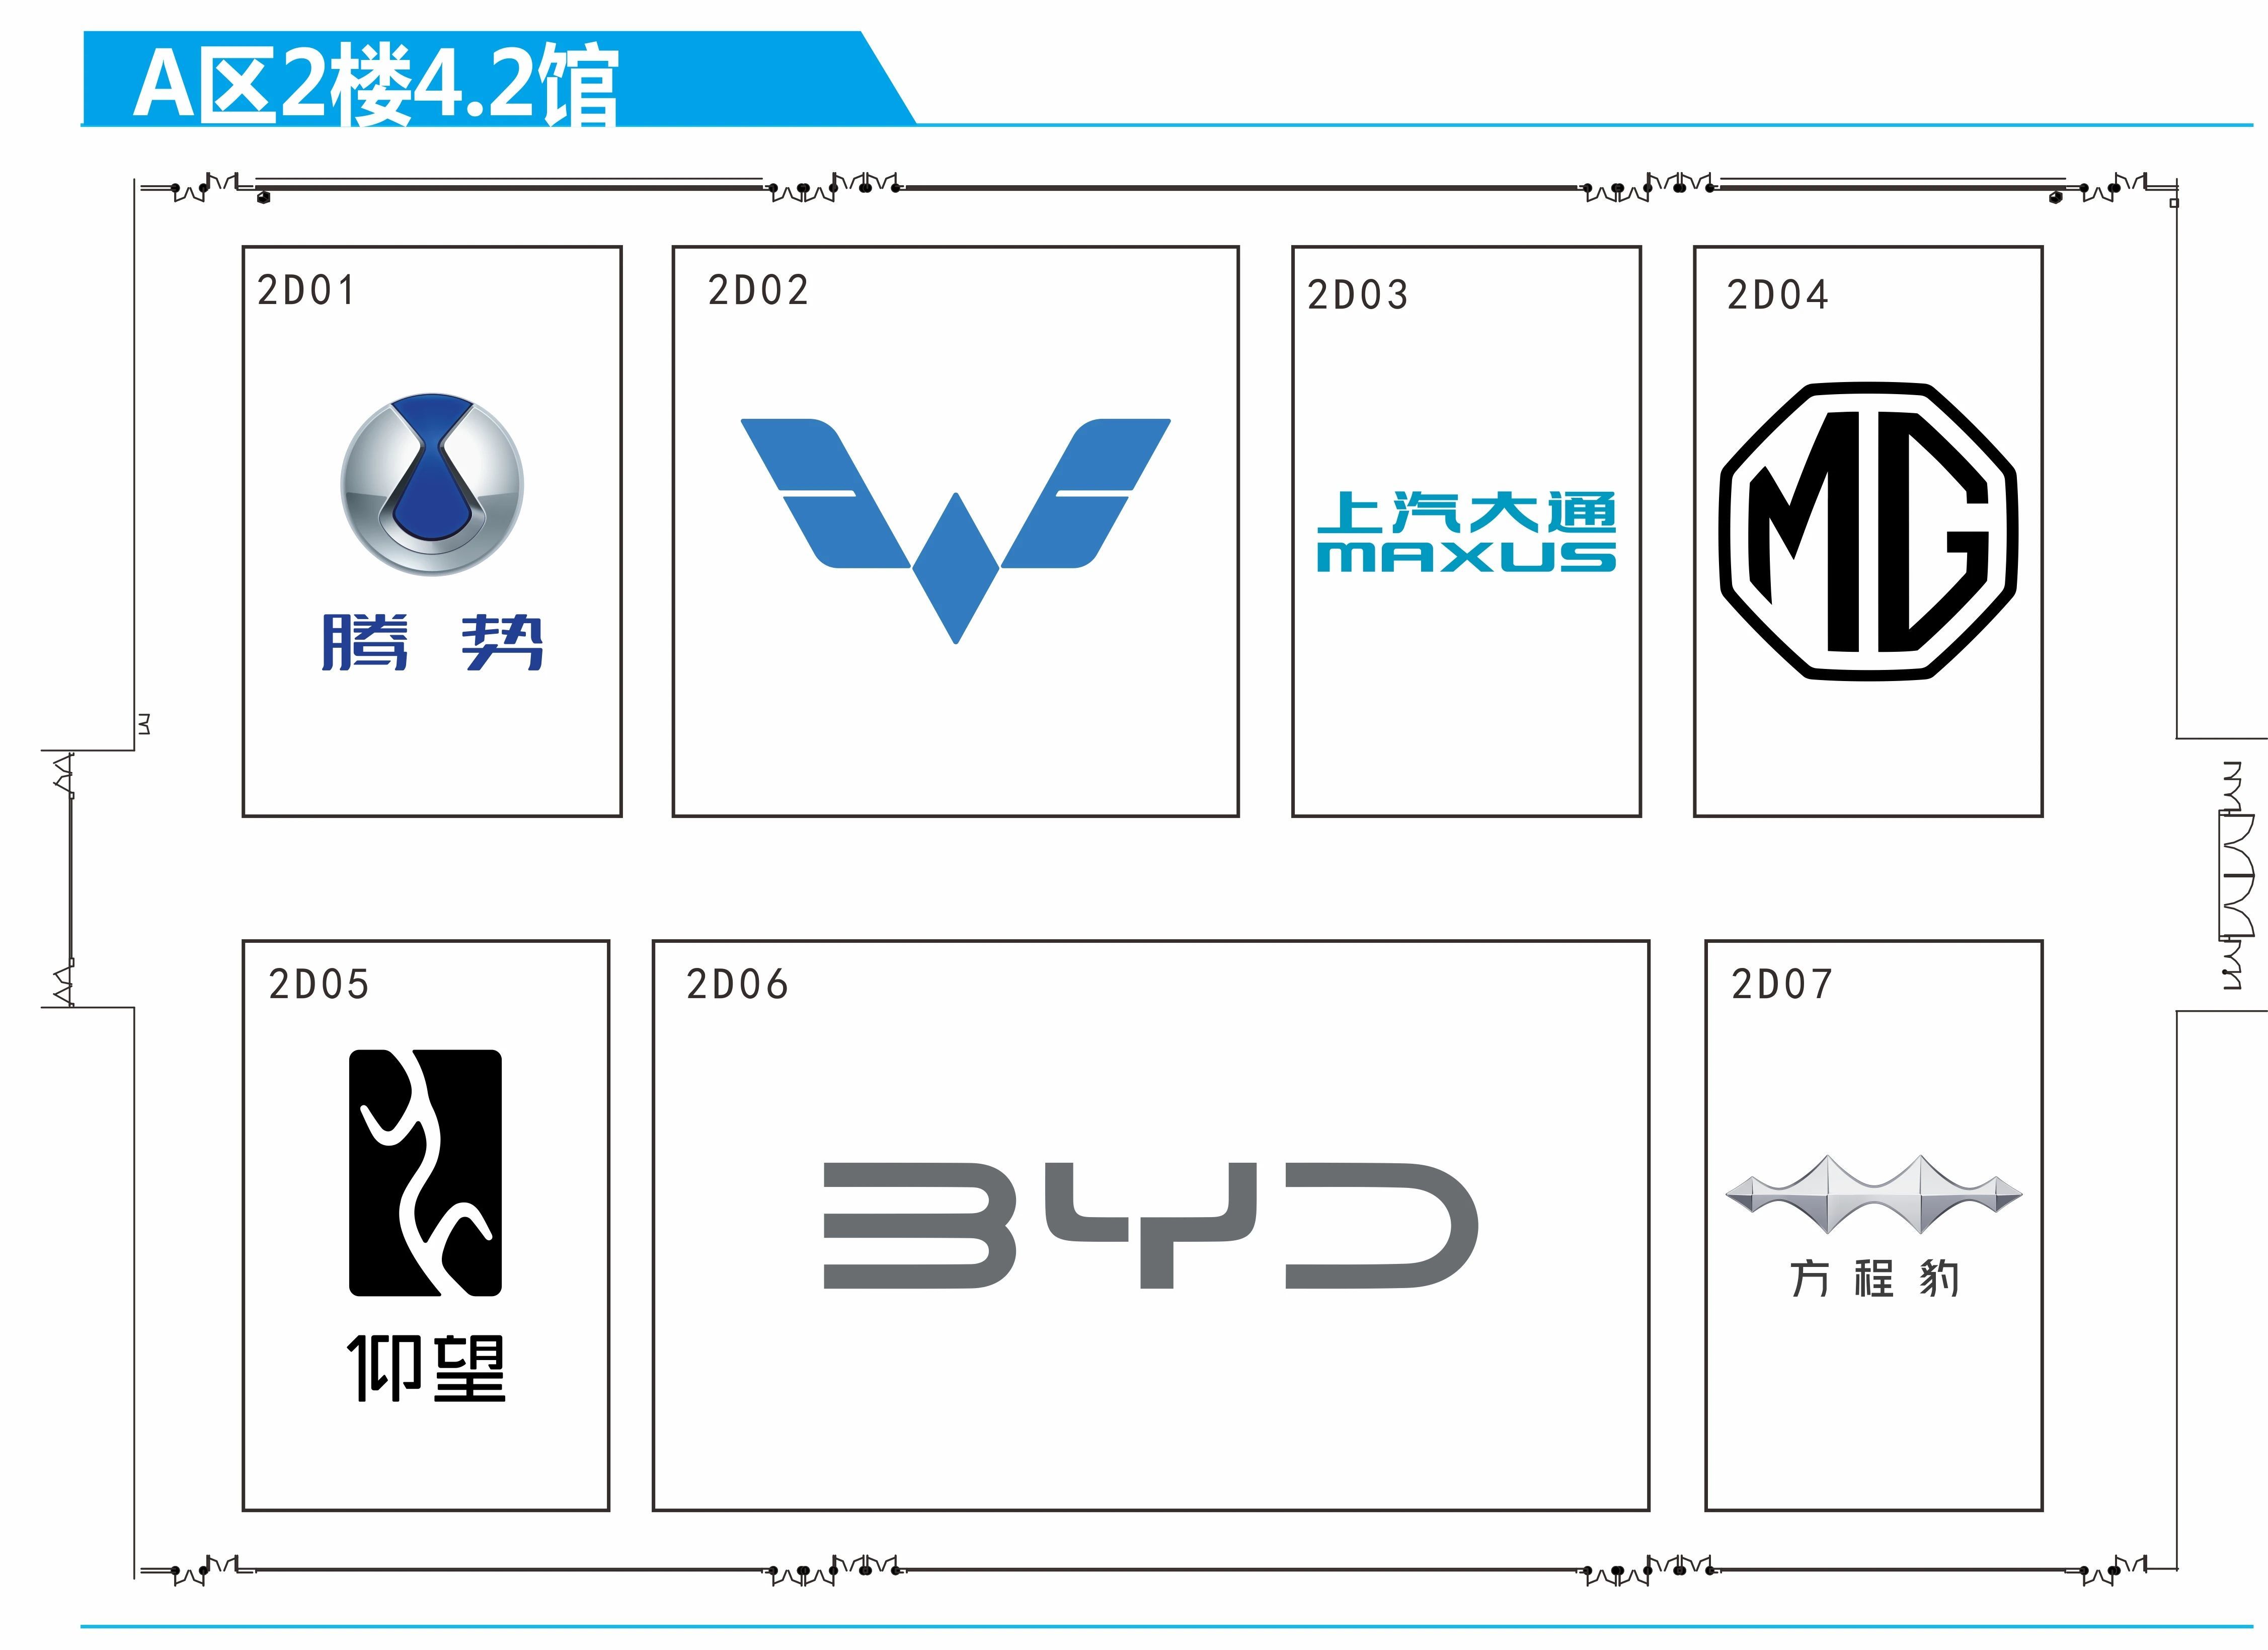 2023广州车展展位图发布，乘用车共有14个展馆